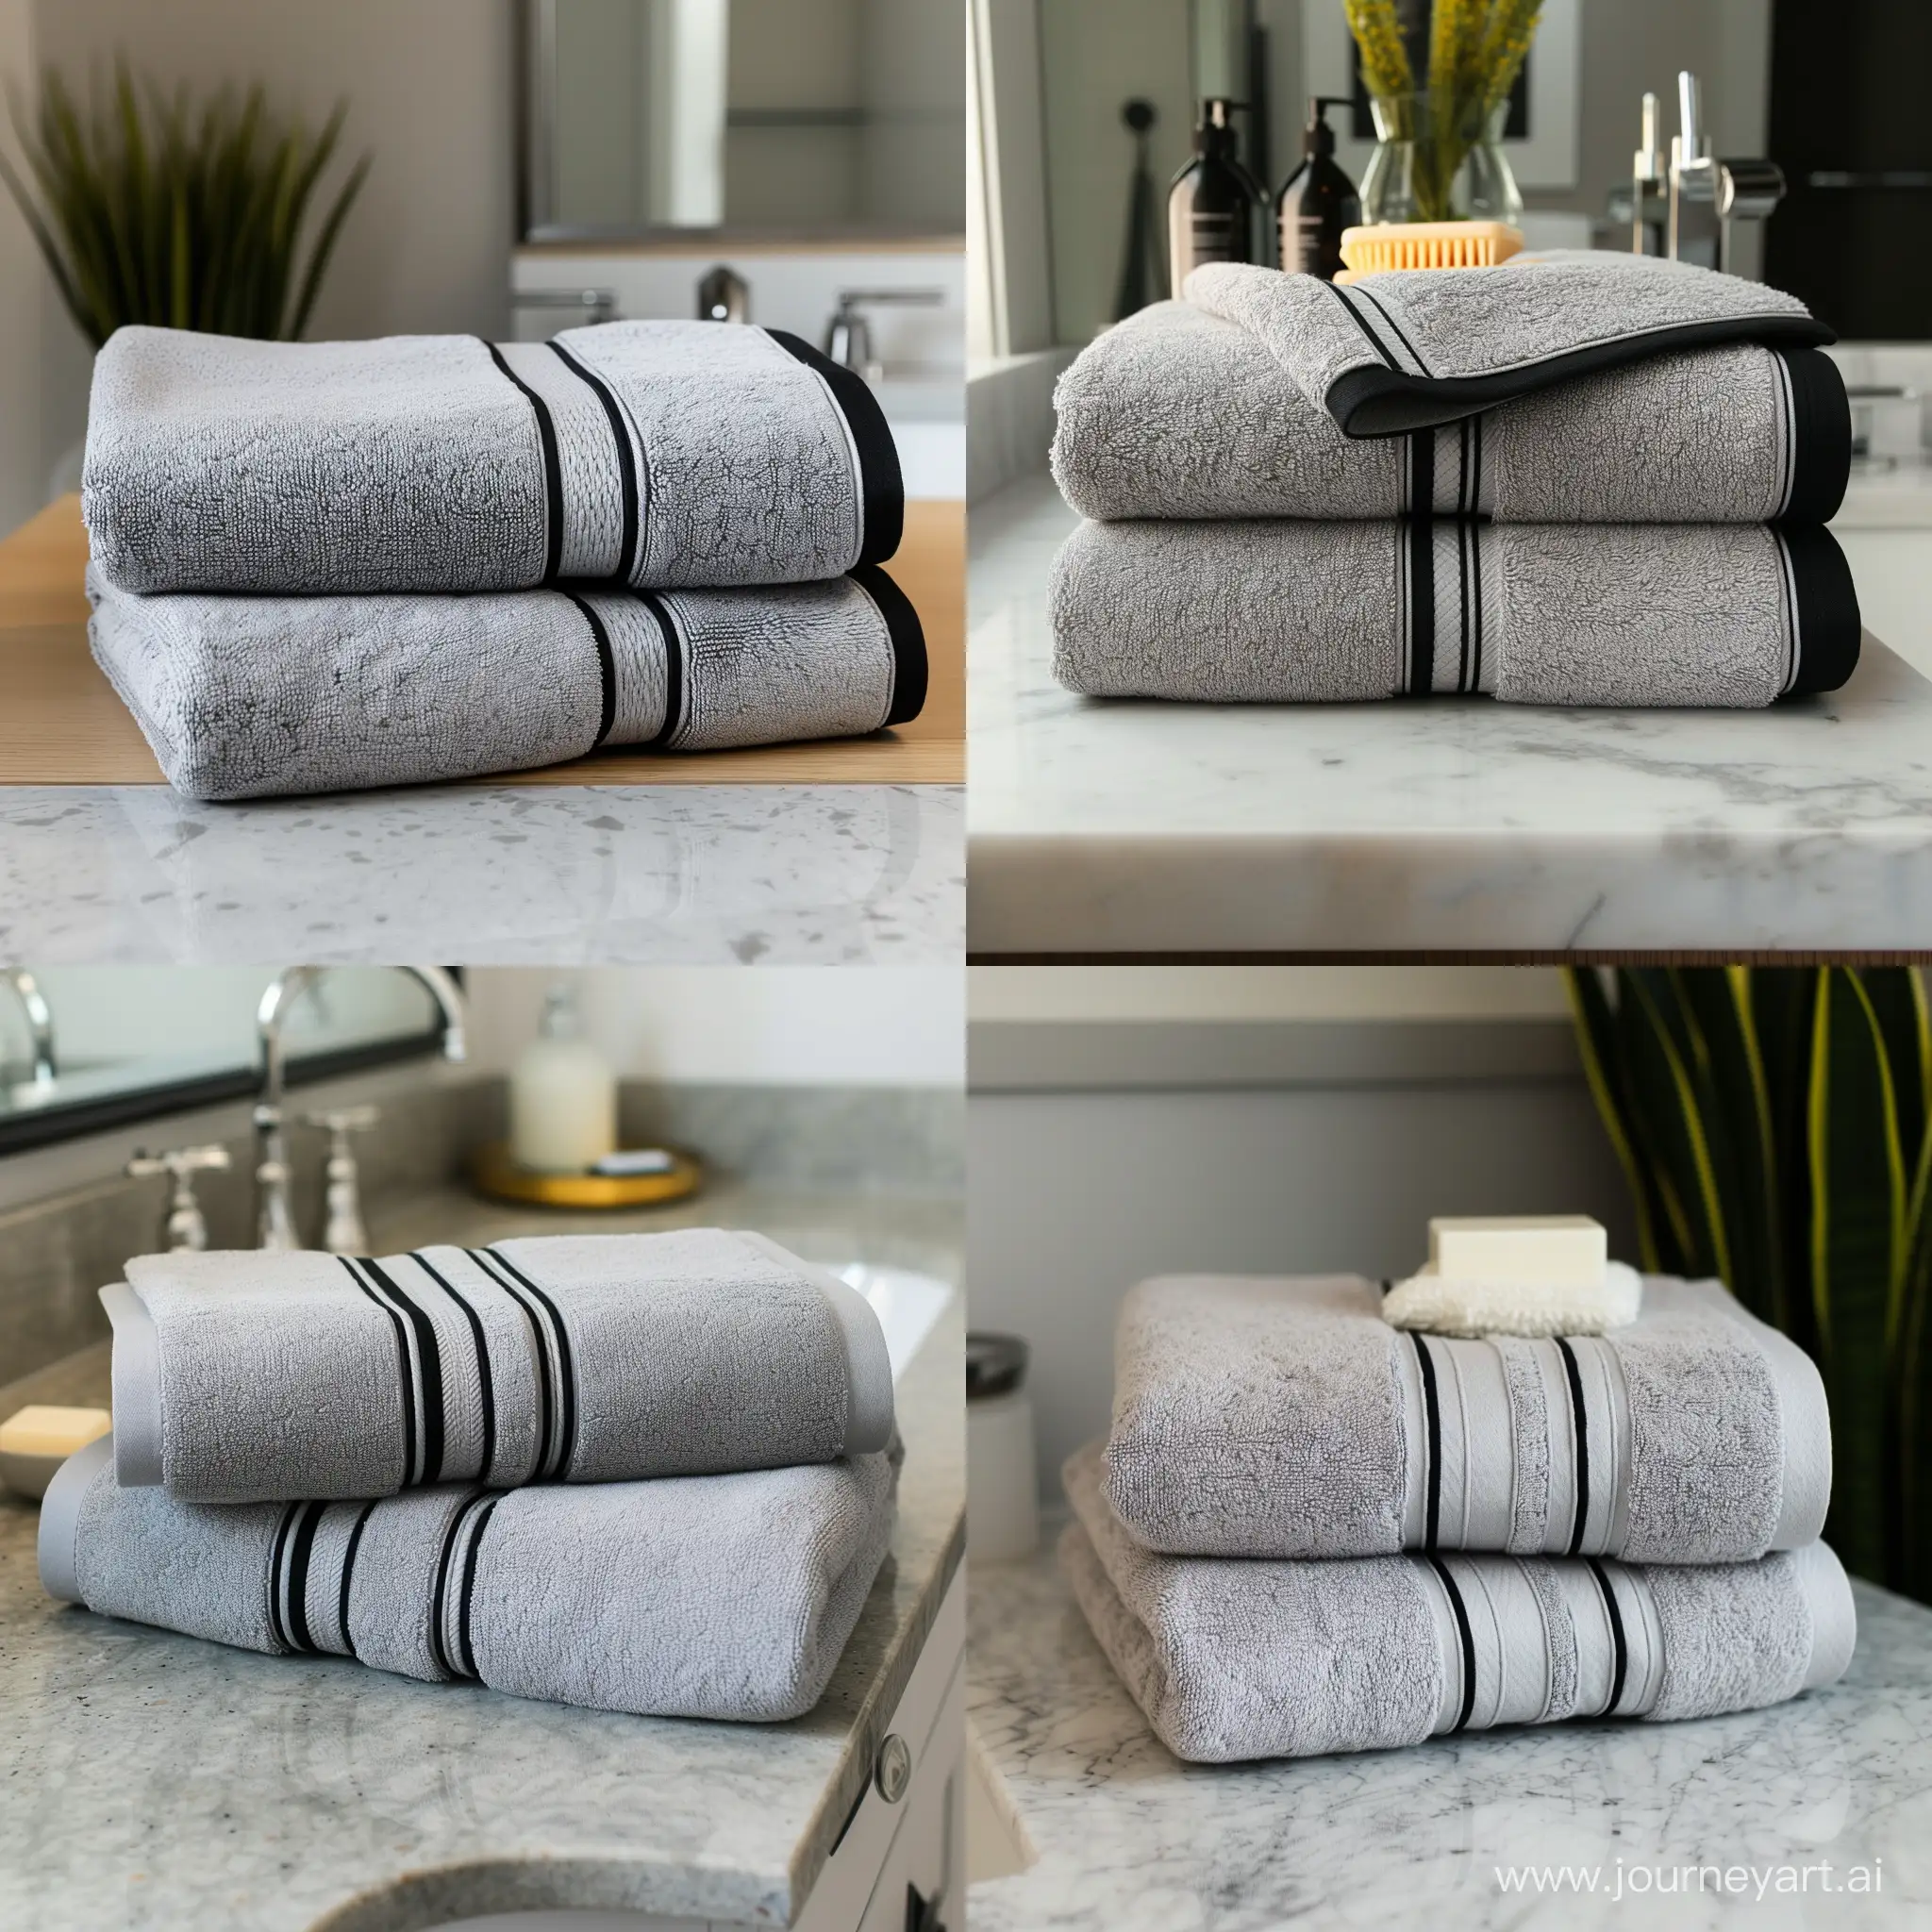 Stylish-Light-Bathroom-Decor-Elegant-Gray-Bath-Towels-with-Black-Trim